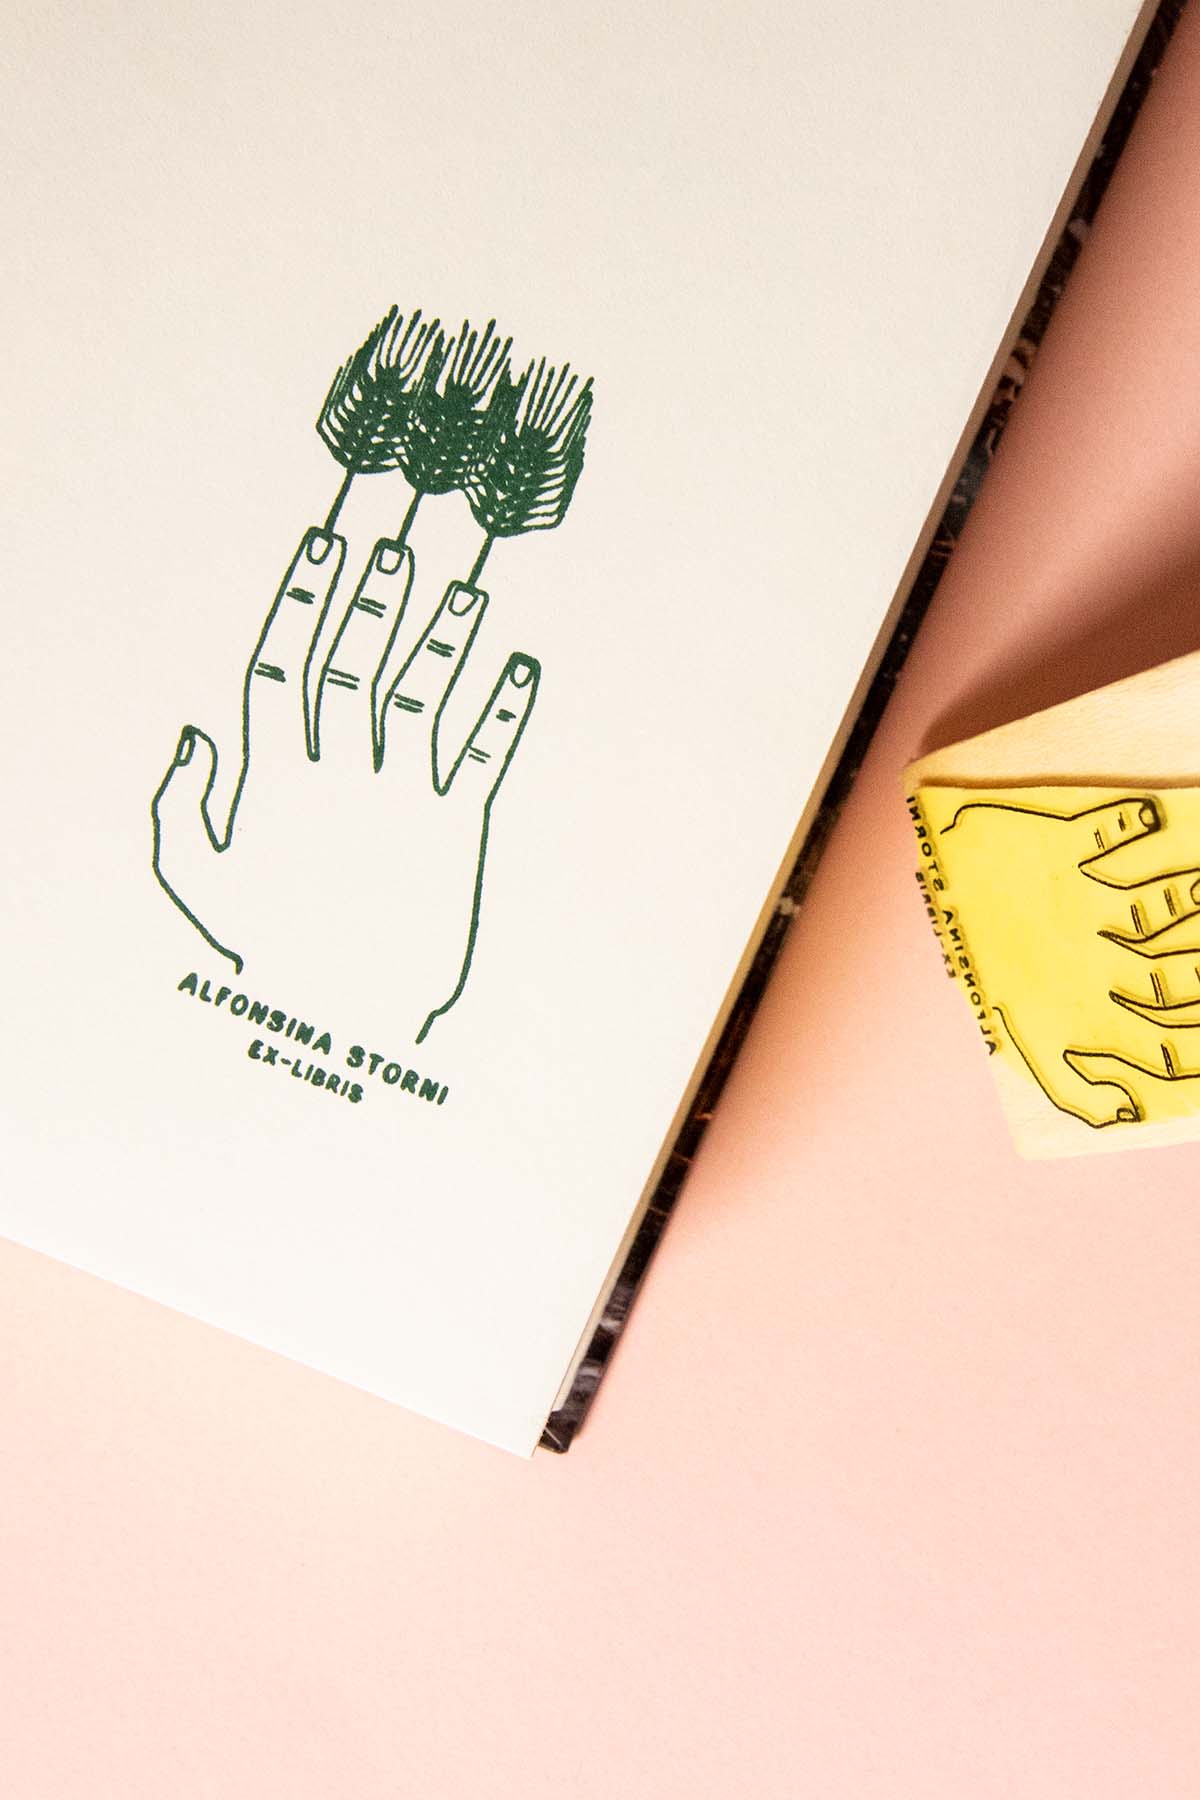 Una ilustración dibujada a mano de una mano con árboles como dedos sobre papel blanco, junto a un sello de madera amarillo sobre un fondo melocotón. El texto "Les Tampons de Roser Ex-libris Dedos de trigo